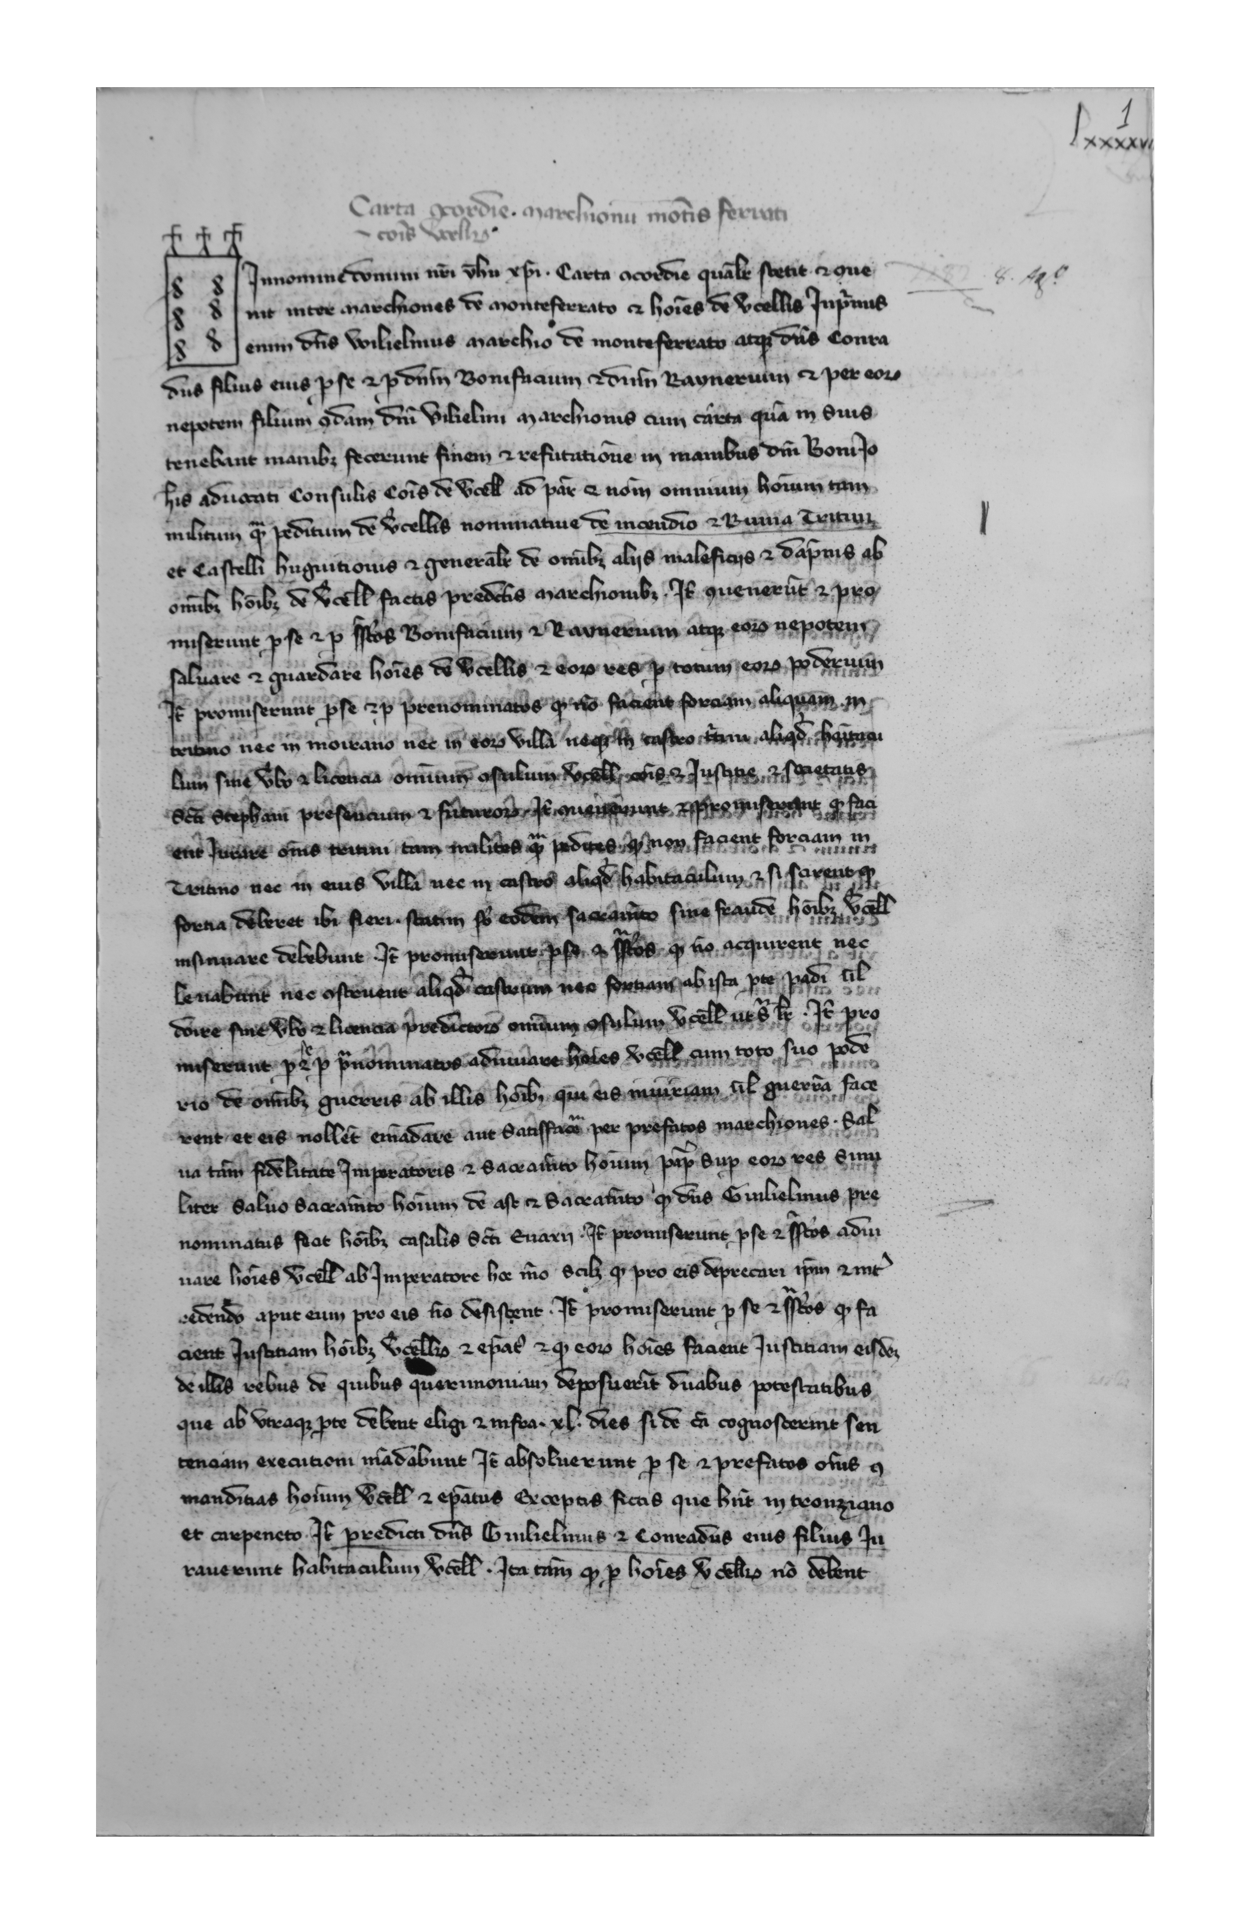 48. “Carta concordiae” 8 agosto 1182